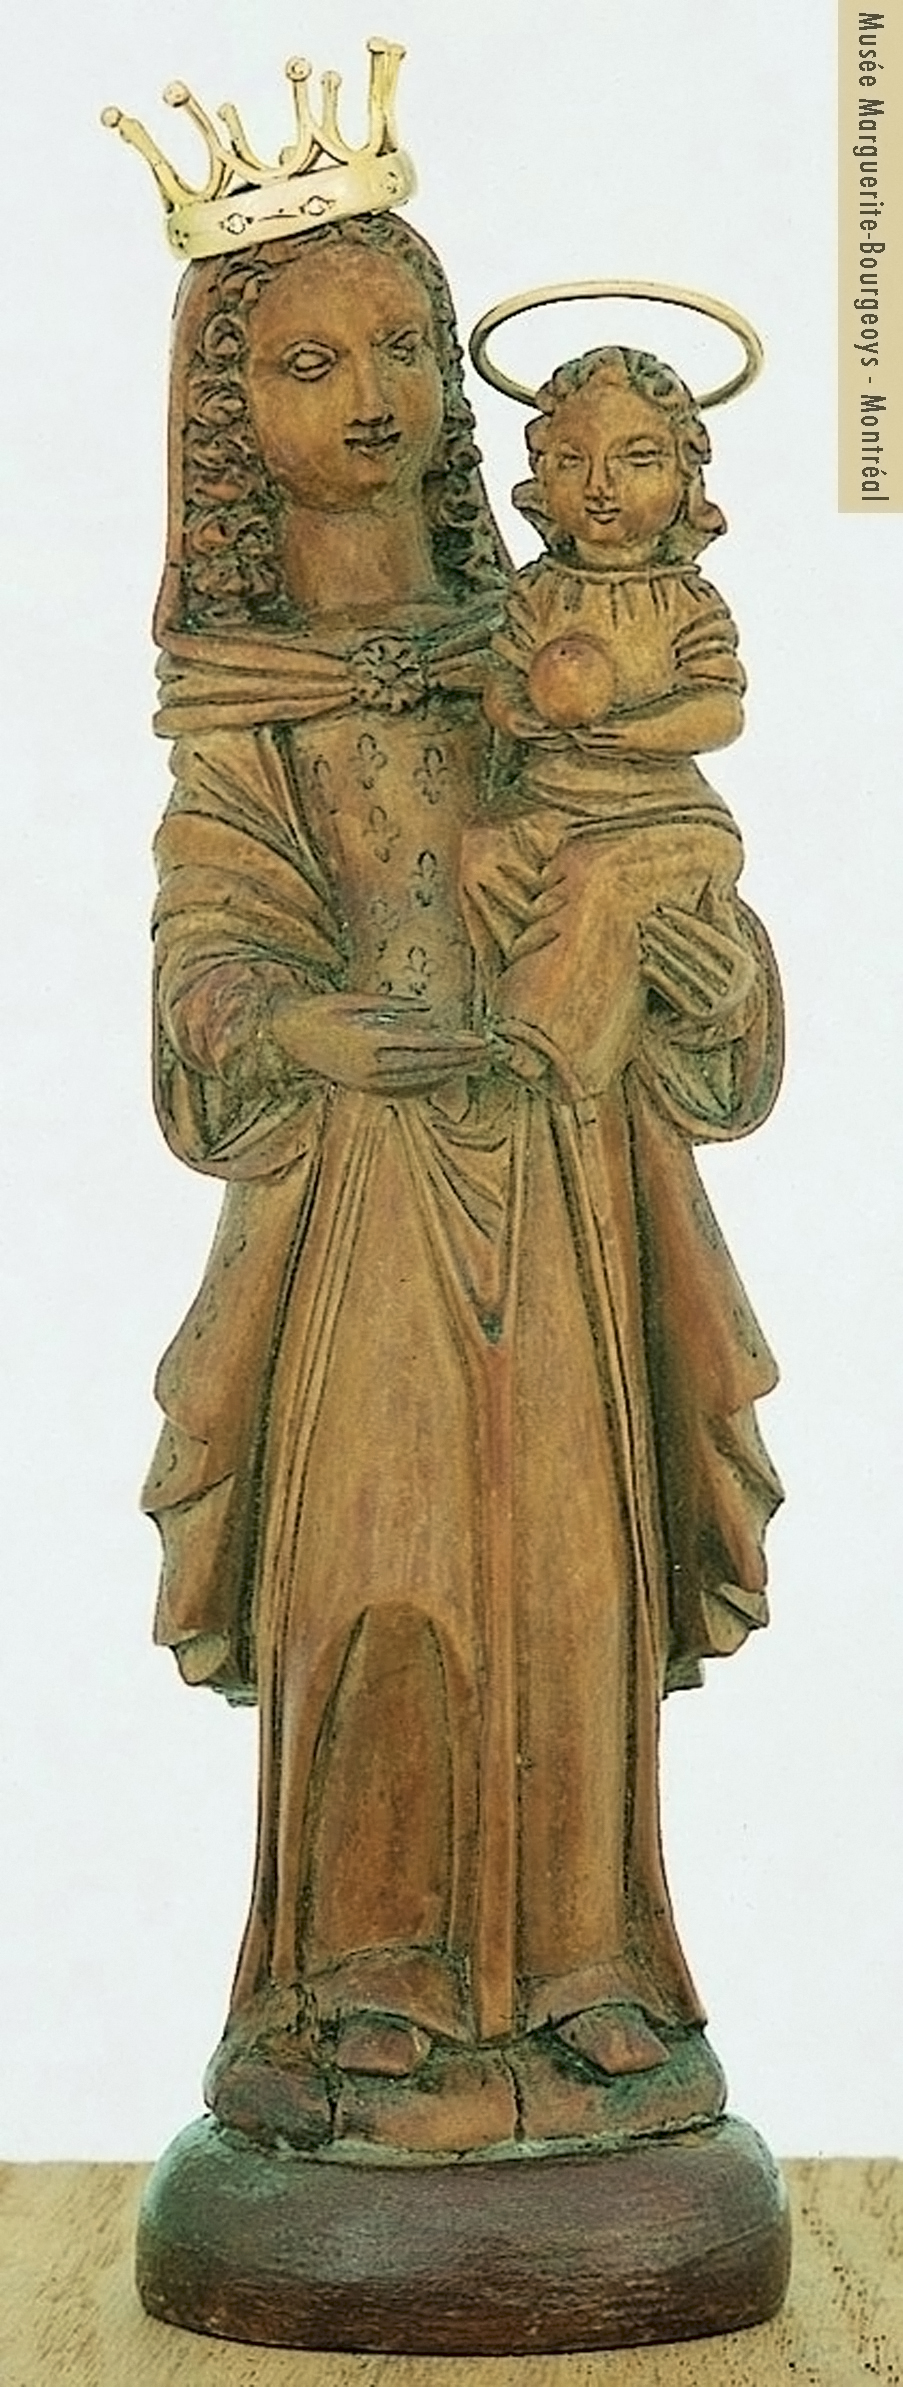 Statuette of Notre-Dame-de-Bon-Secours